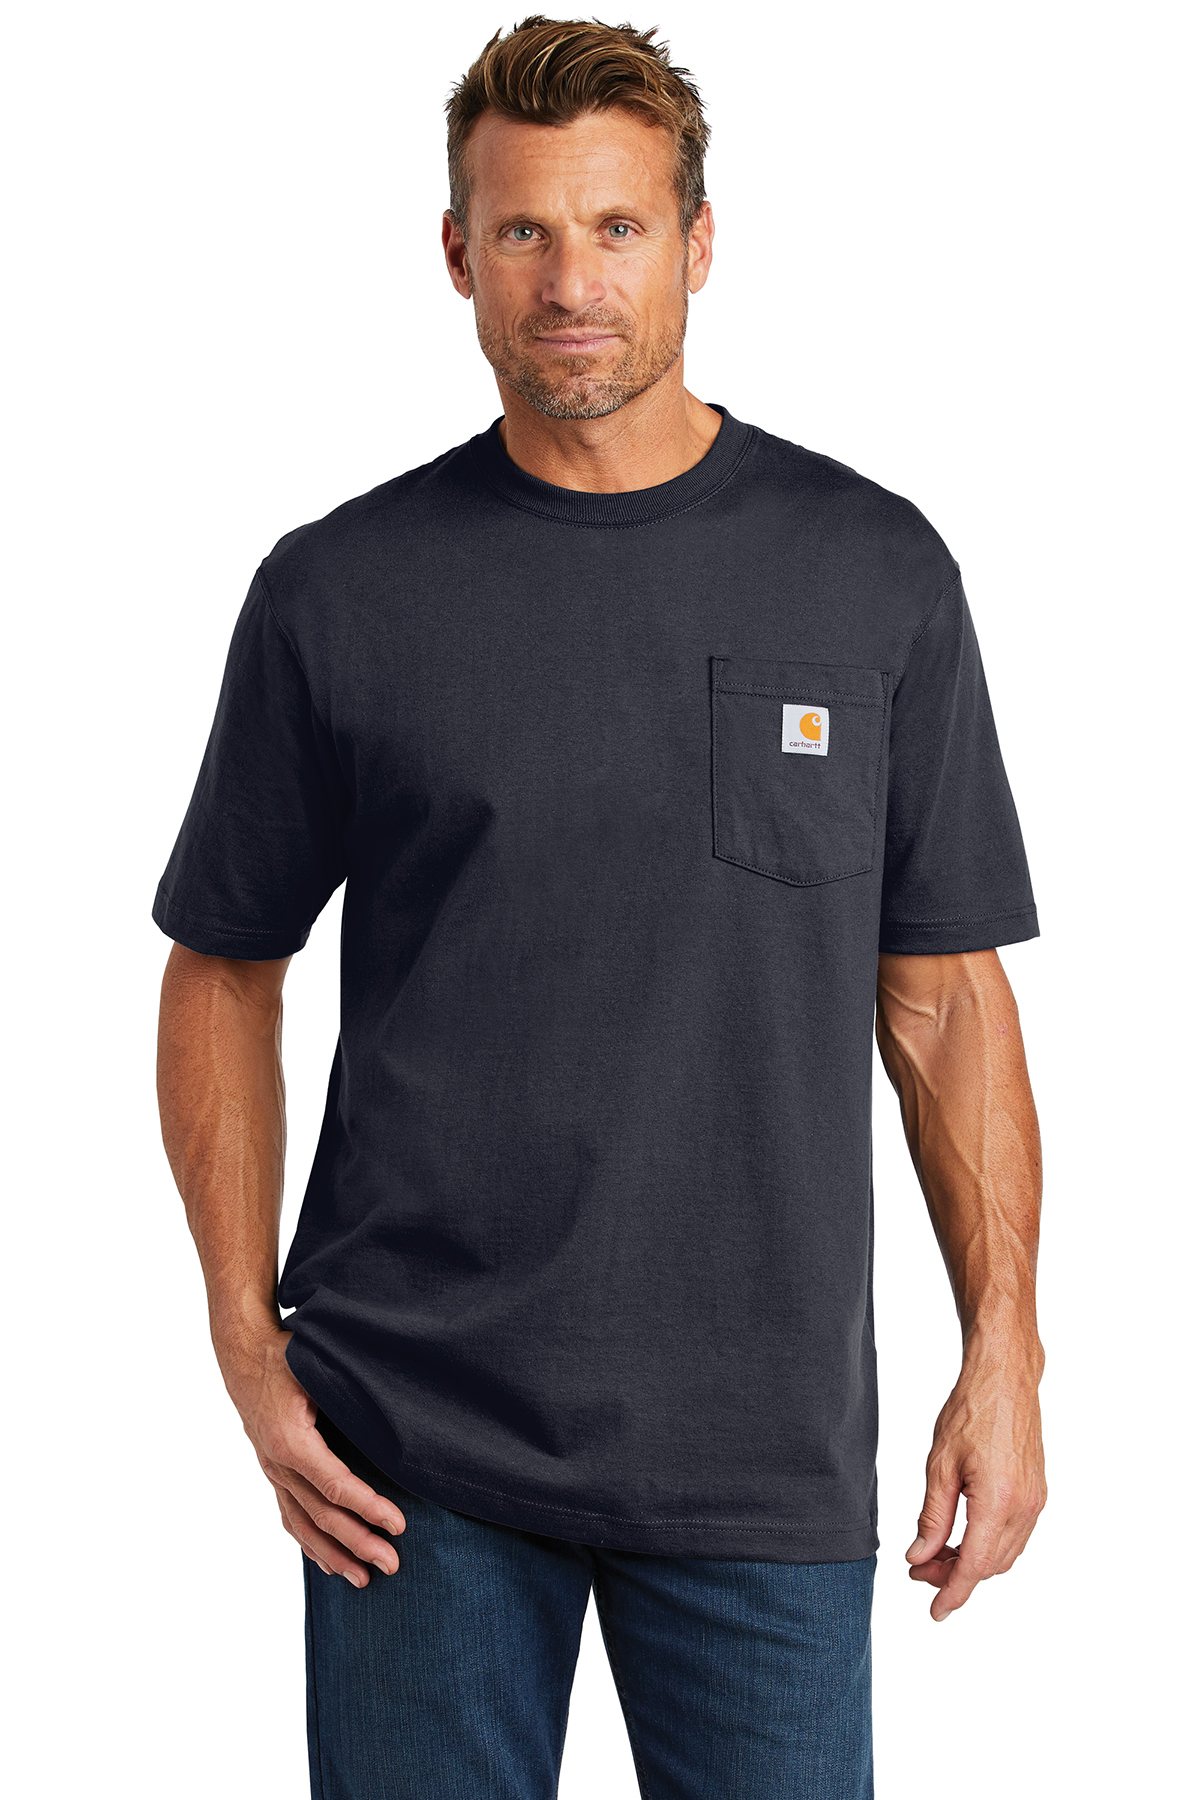 CTTK87   Carhartt ® Tall Workwear Pocket Short Sleeve T-Shirt